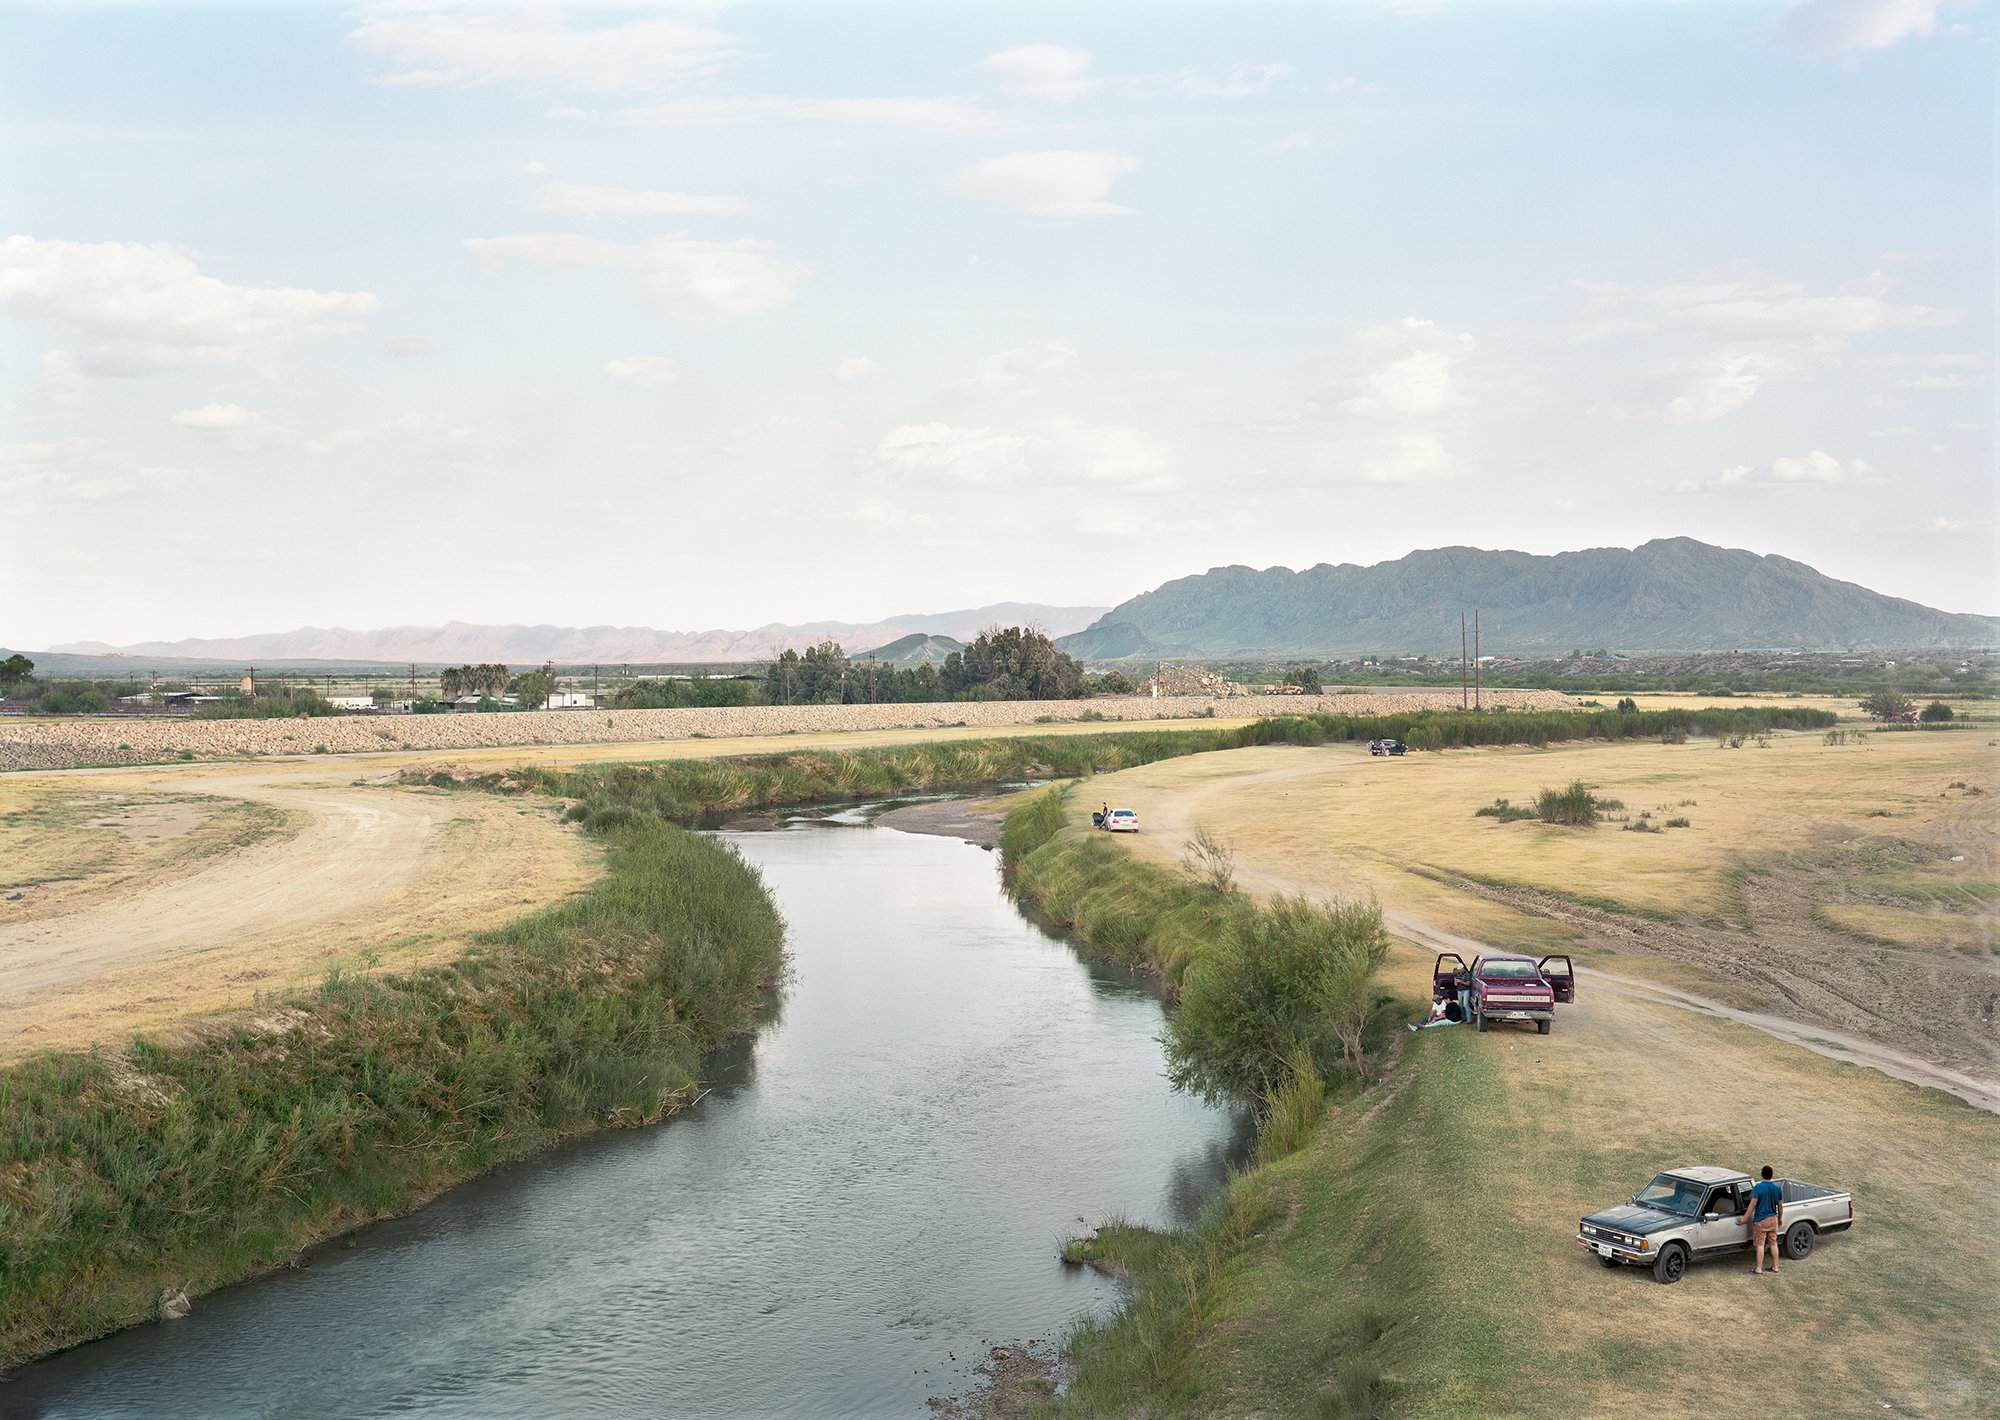 Cars along the Rio Grande, US-Mexico Border, Ojinaga, Mexico, 2019